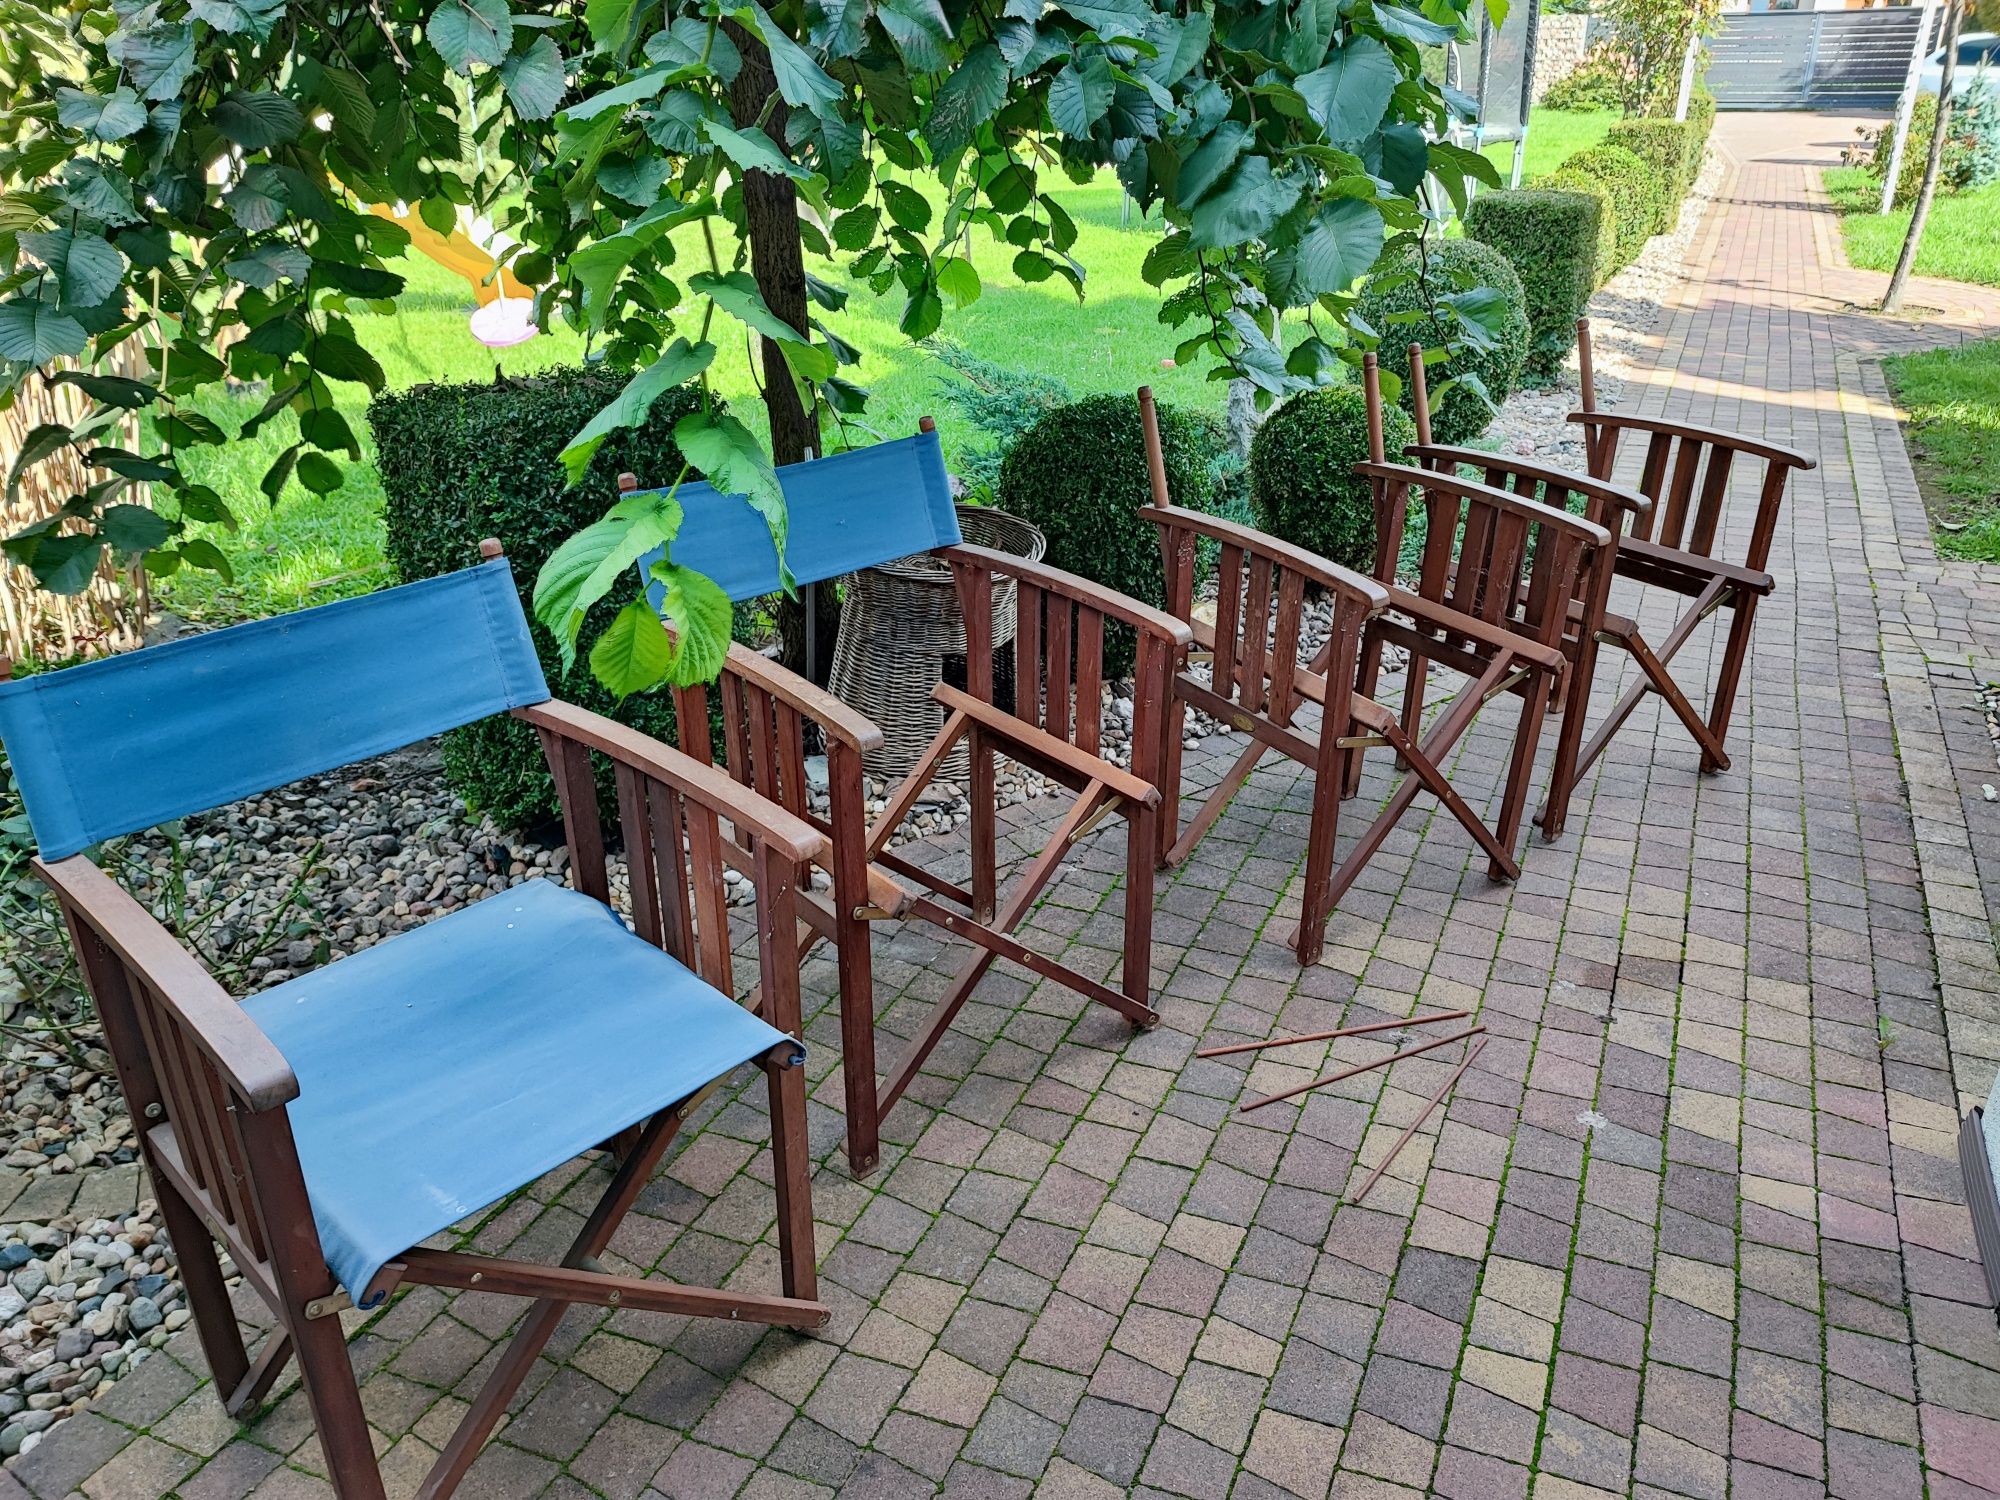 Jutlandia Hardwood krzesła ogrodowe TEAKOWE skandynawskie 4szt.